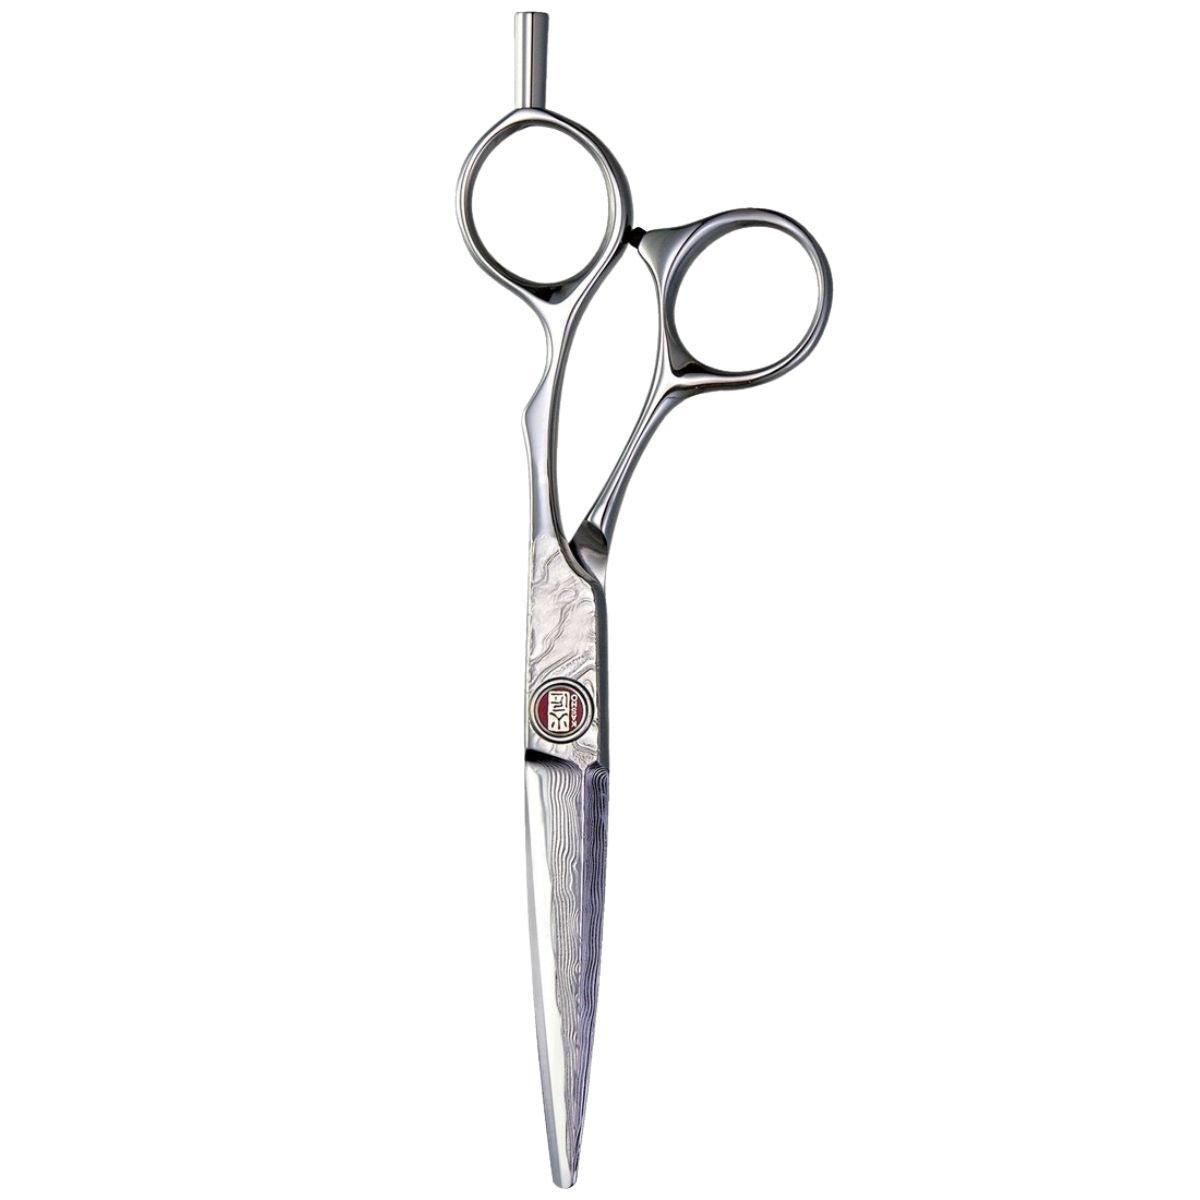 Kasho Damascus Offset Hair Cutting Scissors - Japan Scissors